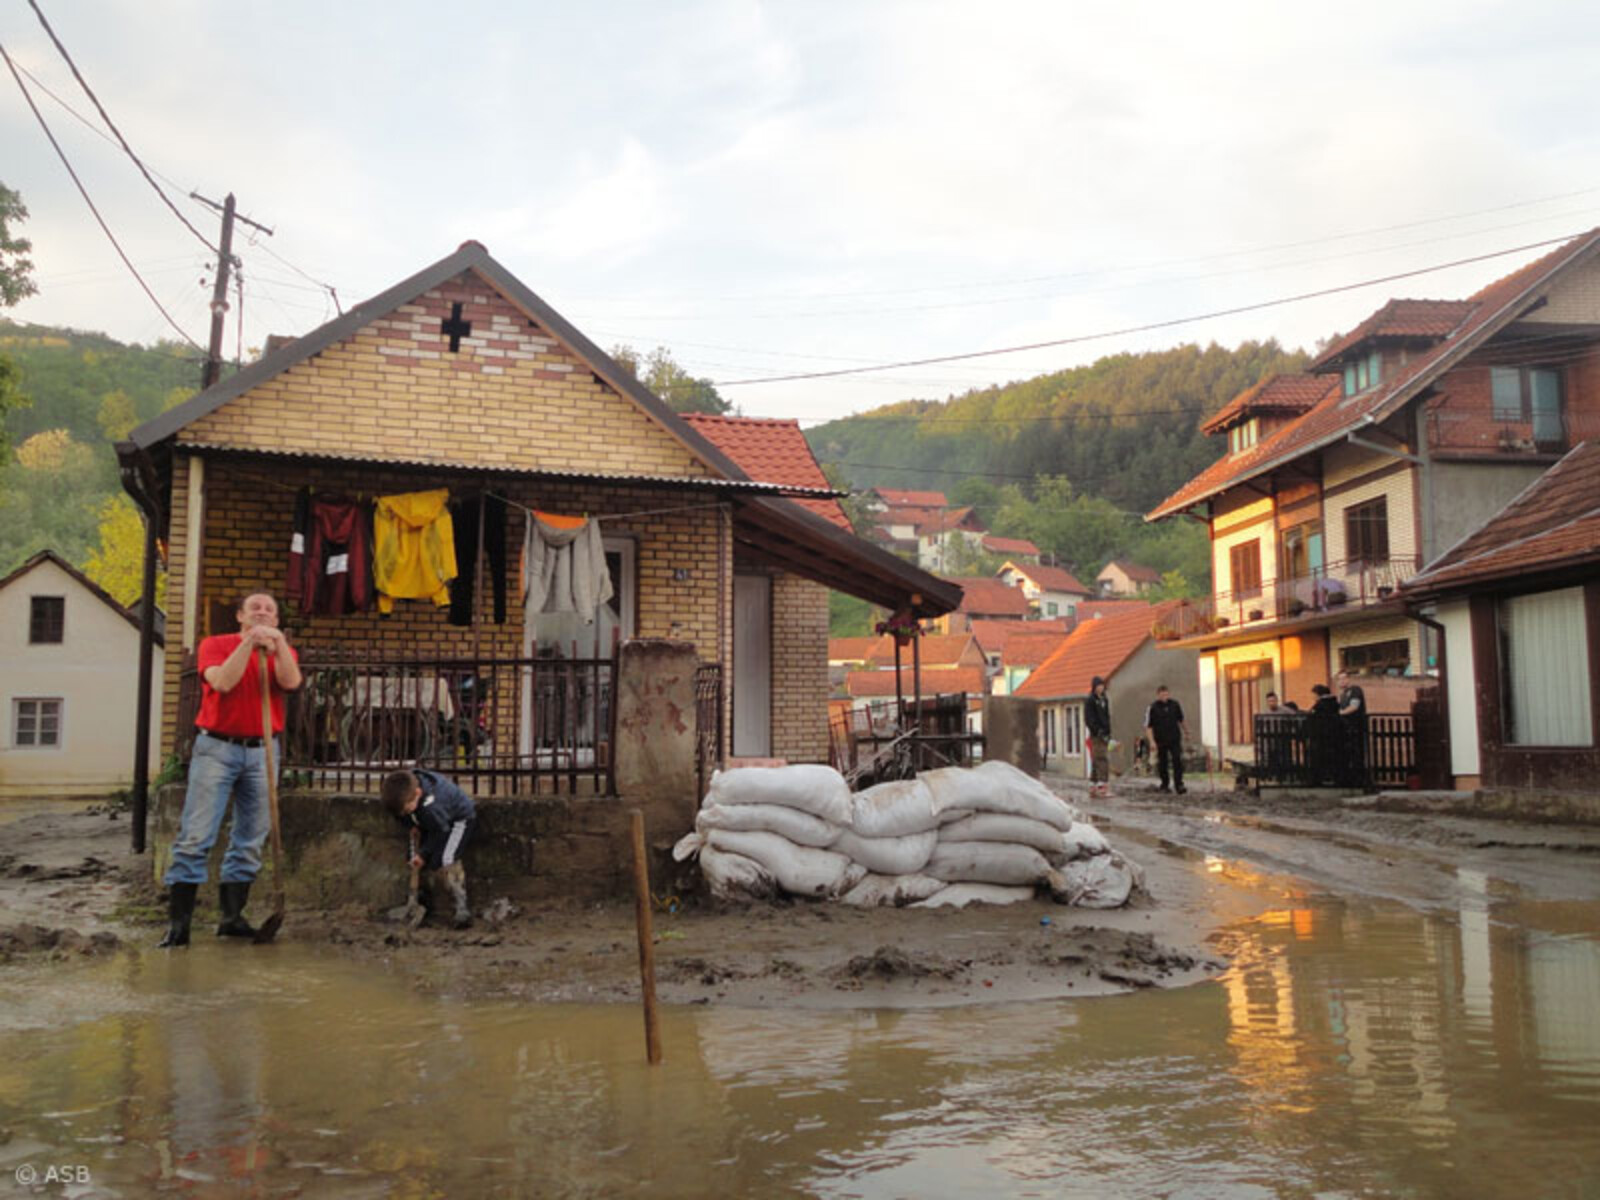 Die Johanniter Unfall-Hilfe organisiert gemeinsam mit der serbischen Botschaft einen Hilfstransport